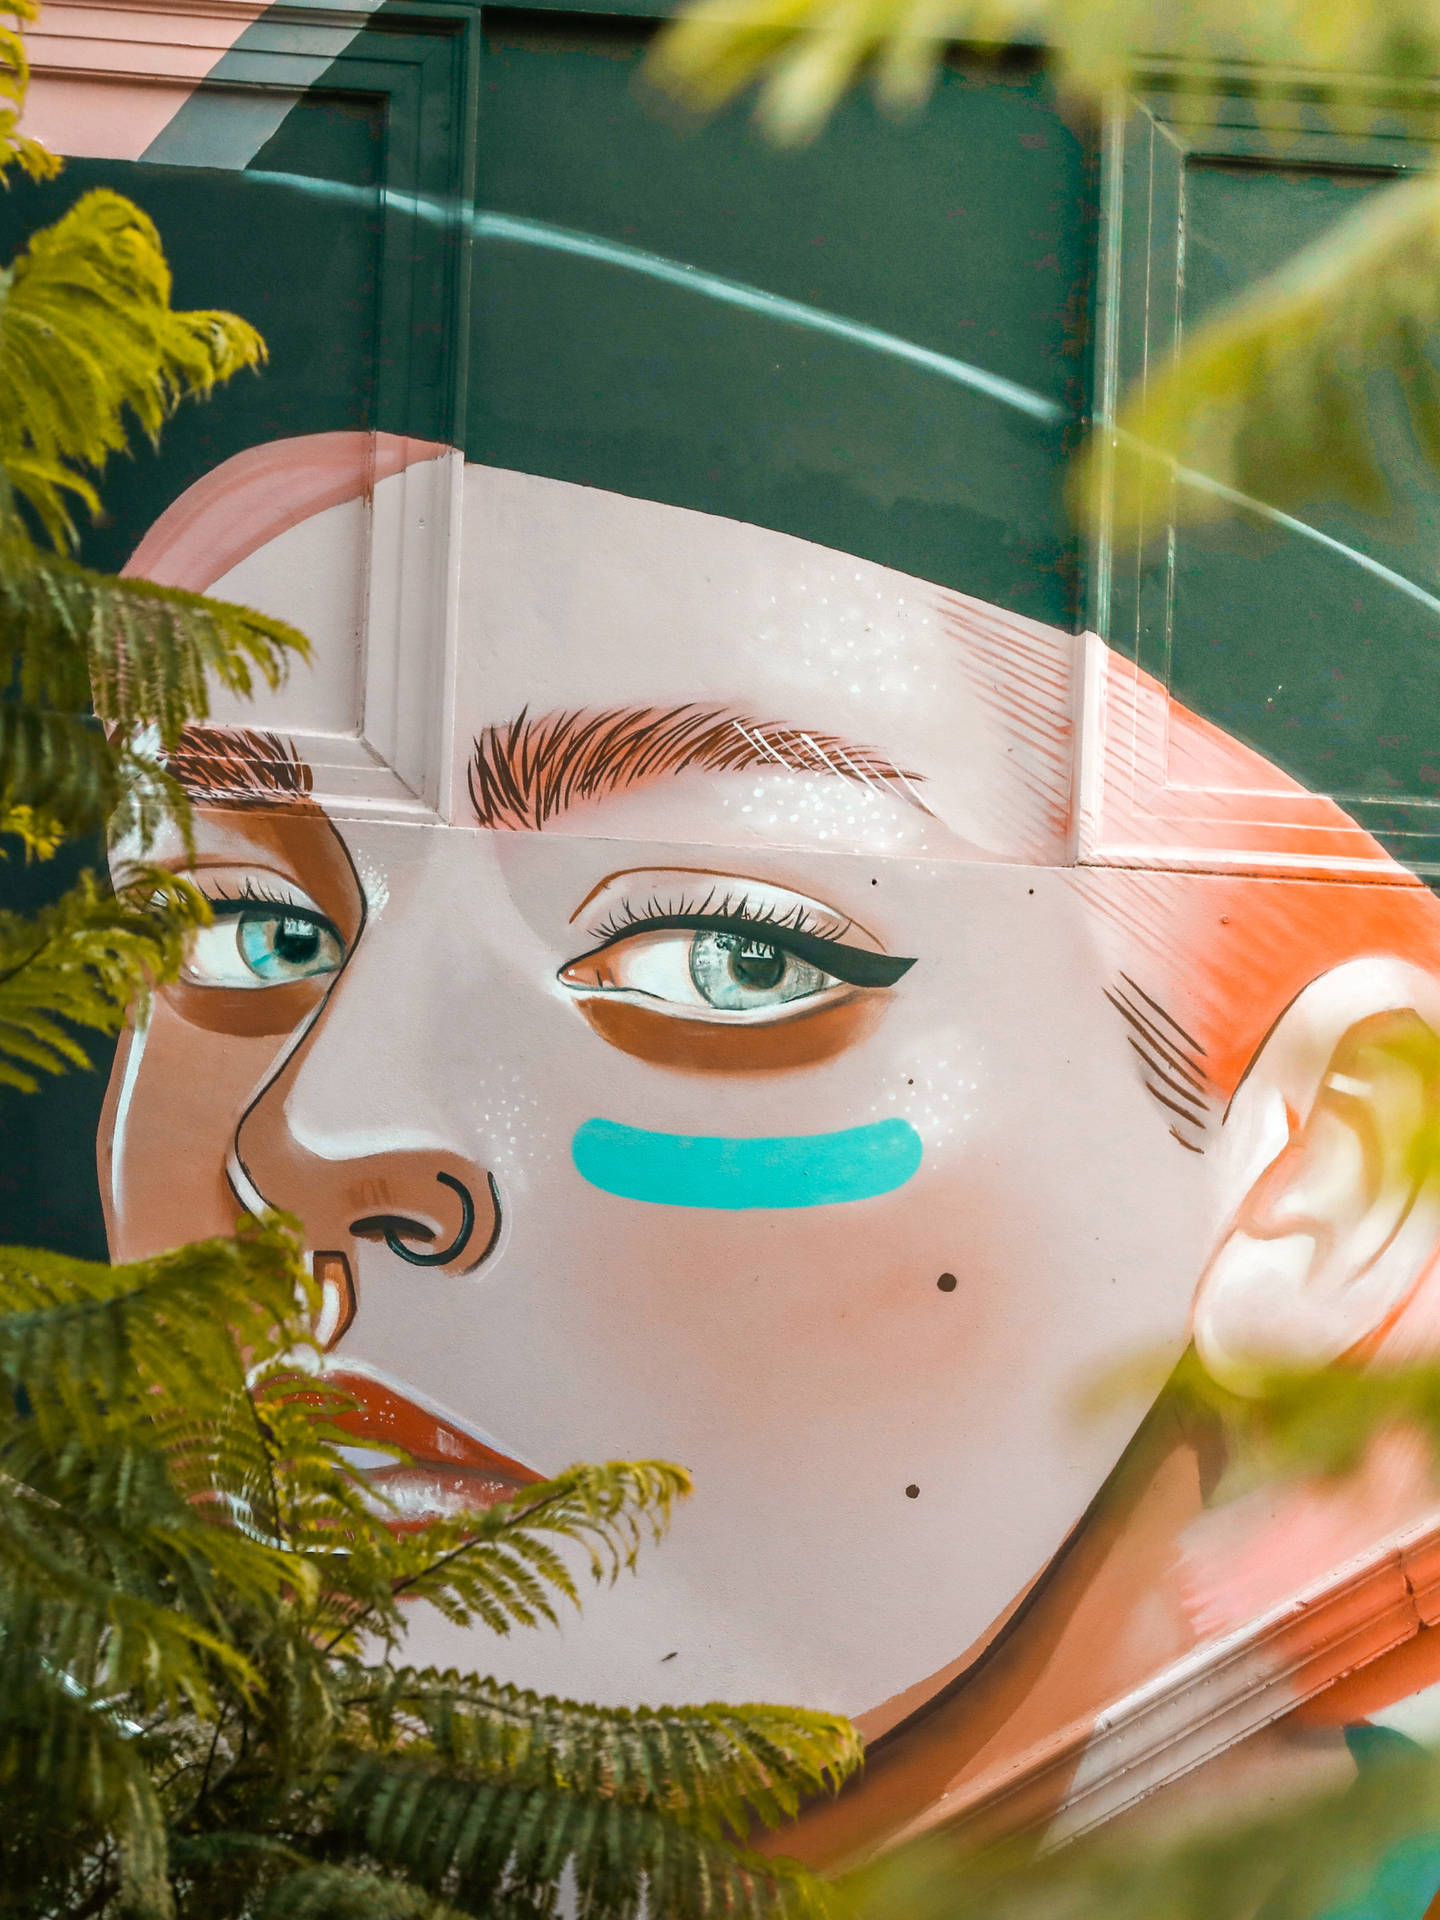 A stunning work of graffiti art featuring a beautiful face Wallpaper